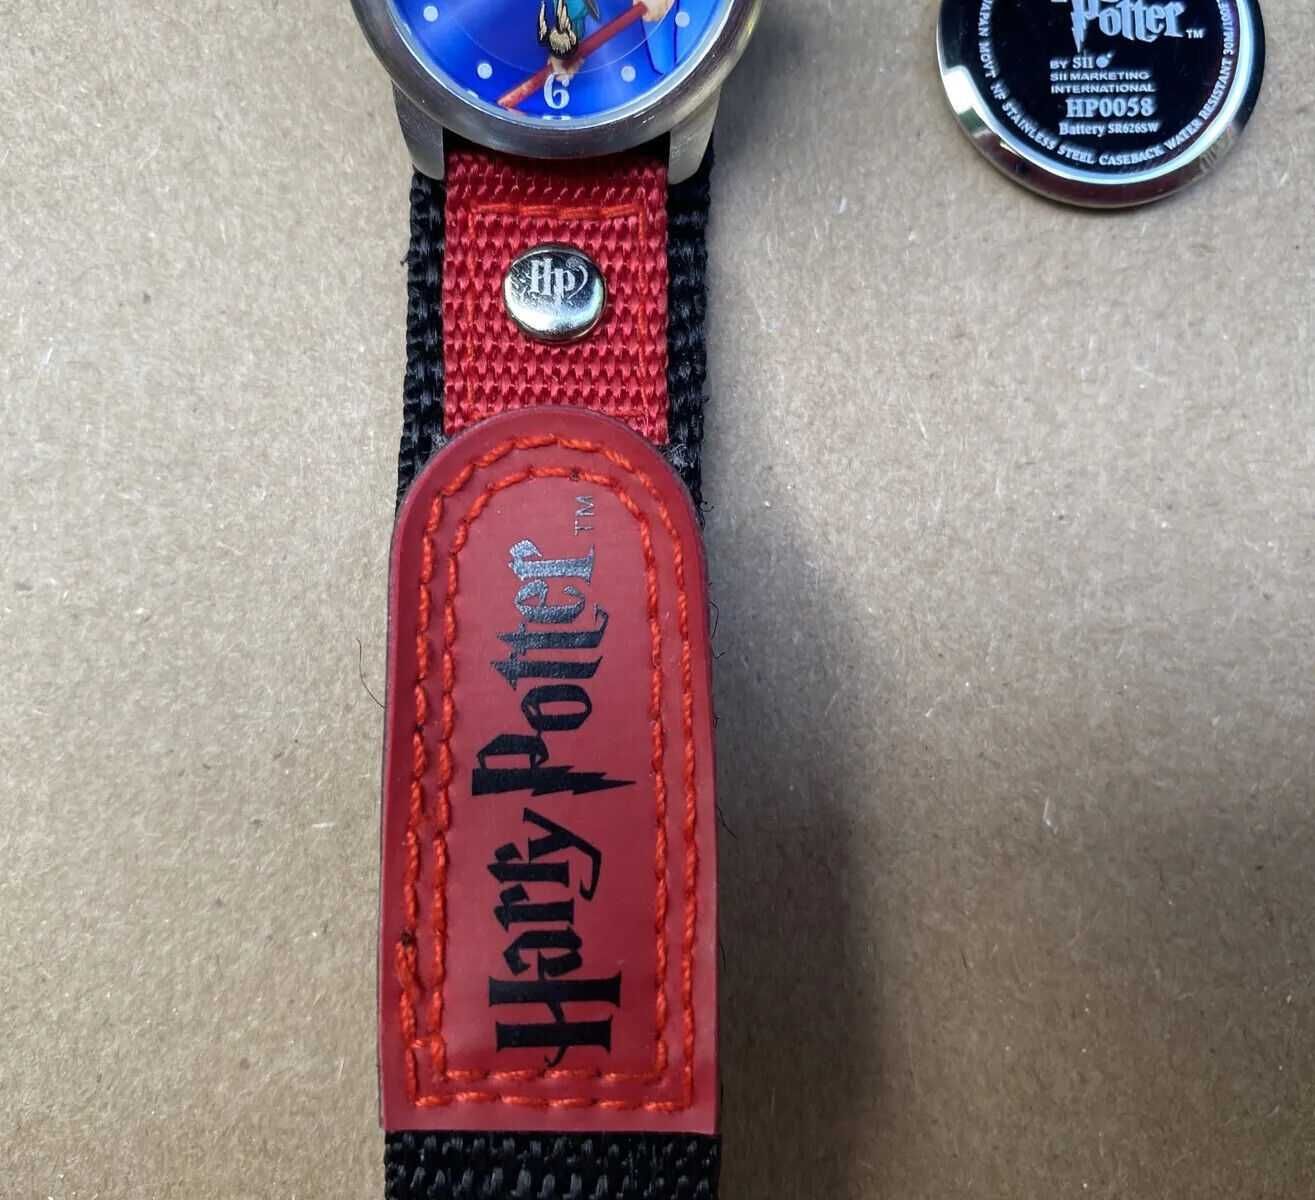 Relógio raro vintage de 2001 - Só existe 1 unidade à venda na internet